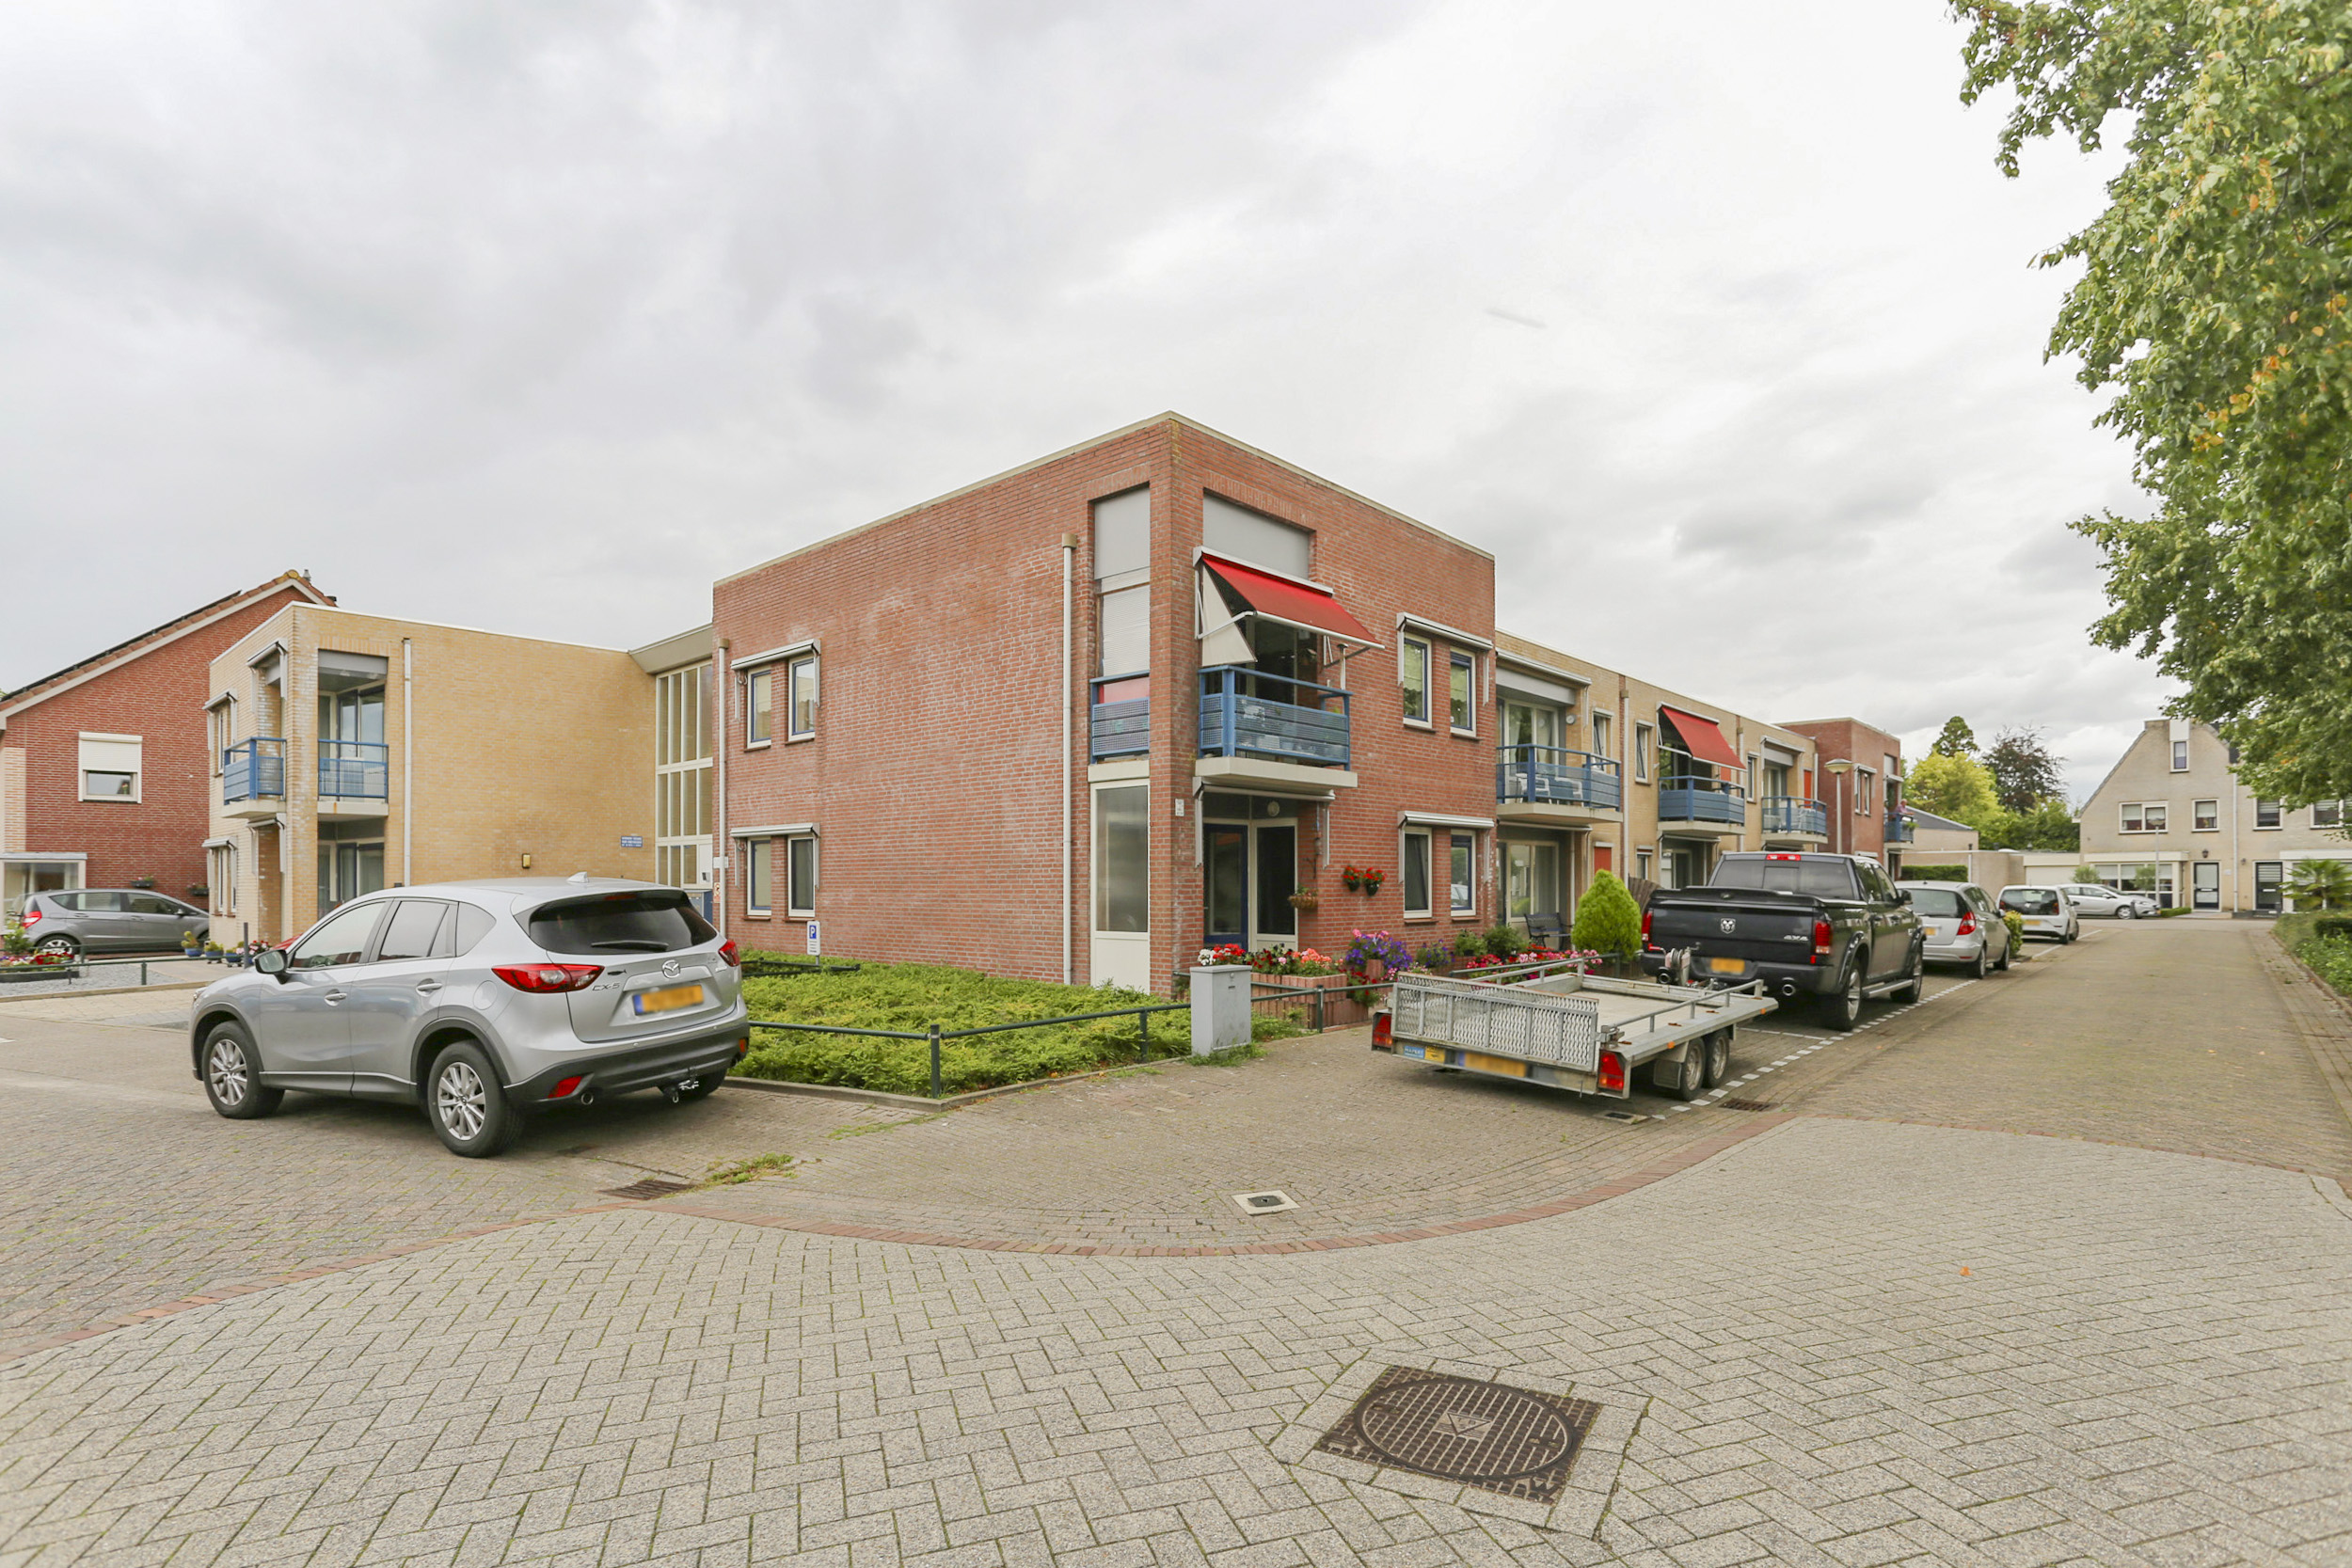 Burgemeester Antonissenstraat 15A, 4715 HA Rucphen, Nederland